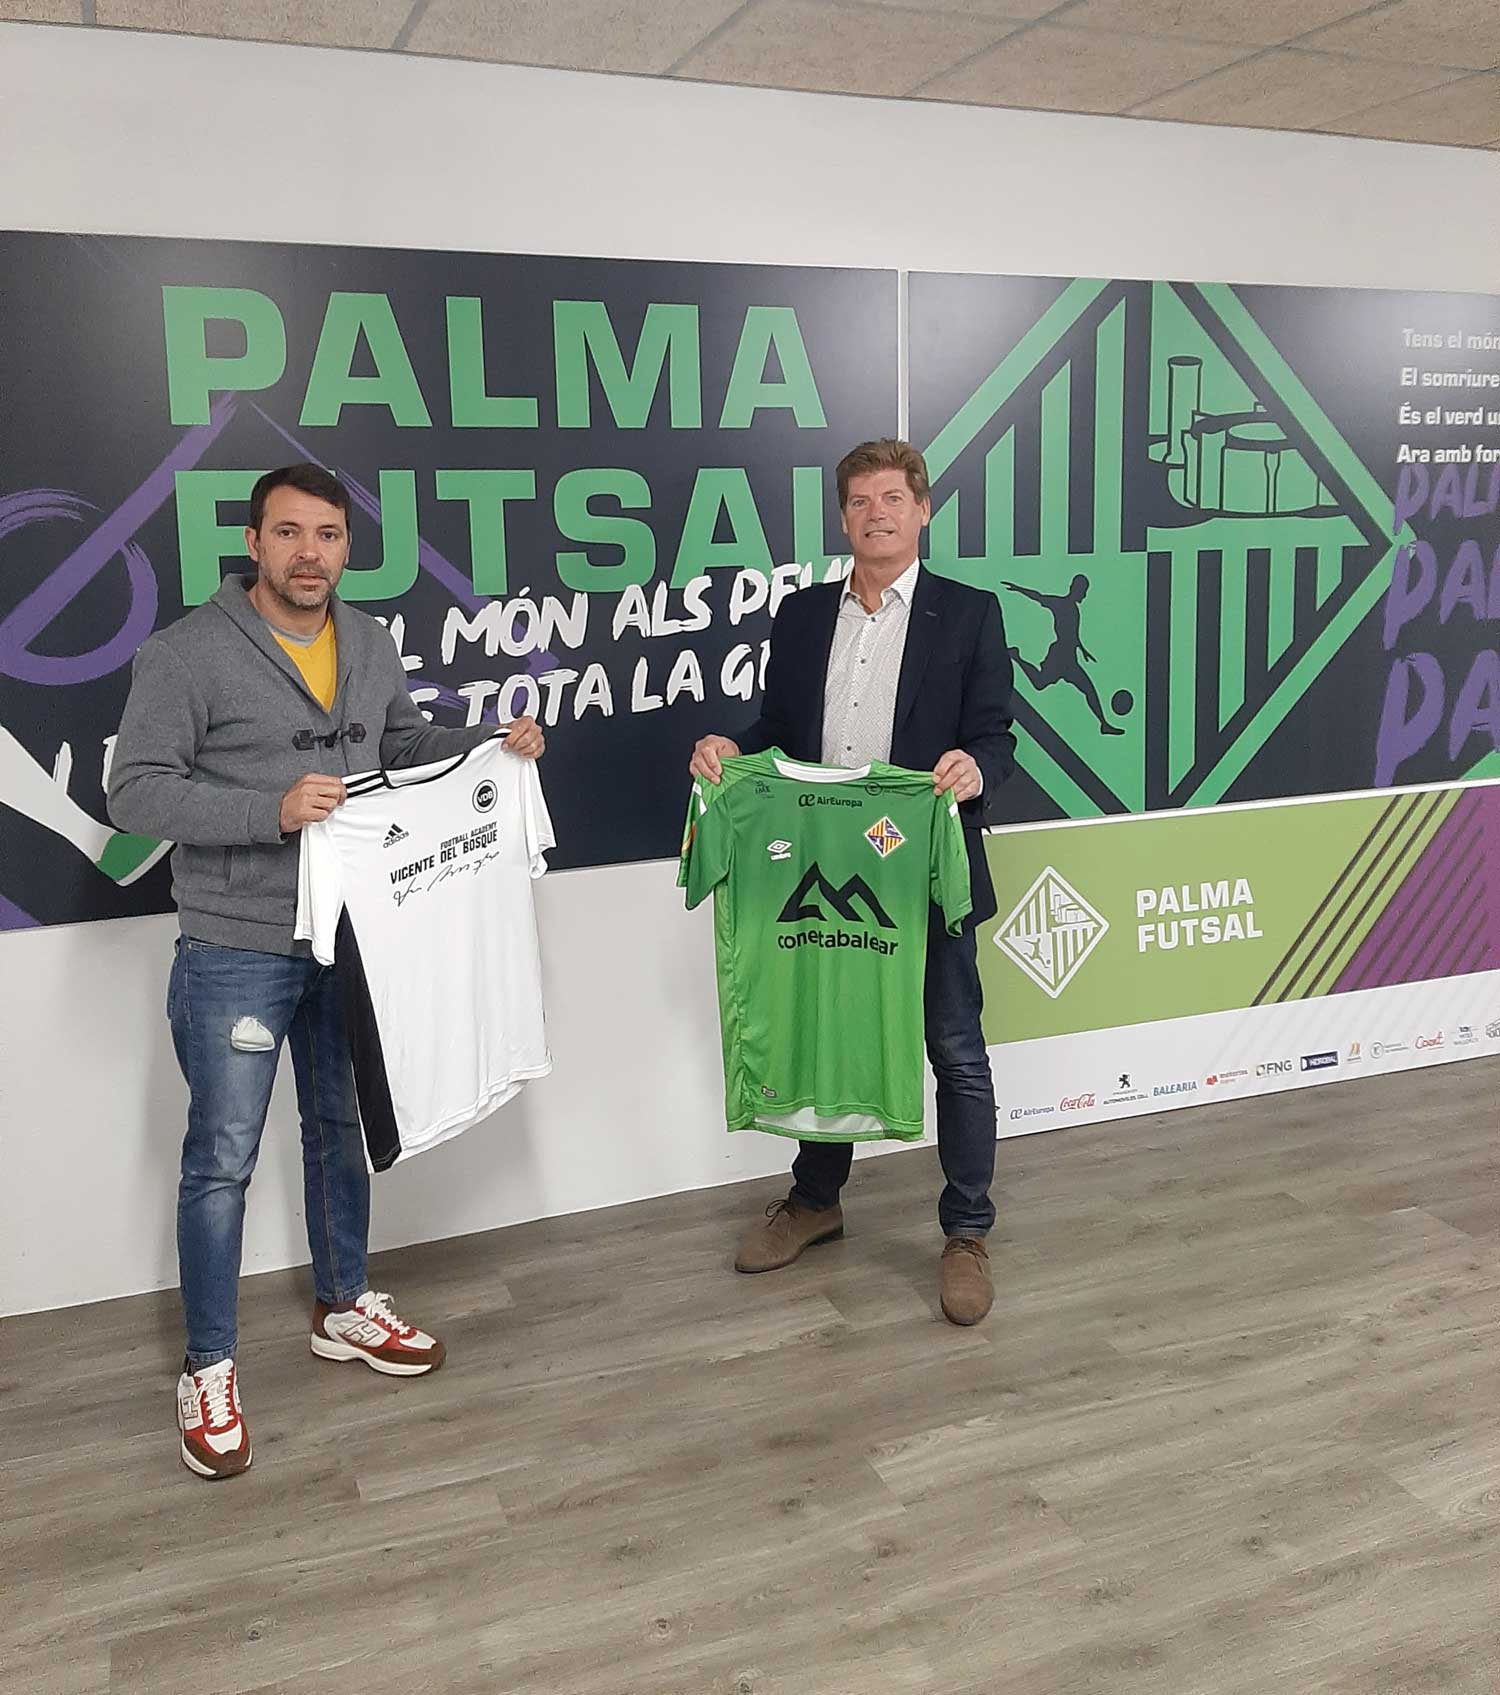 Palma Futsal Agreement